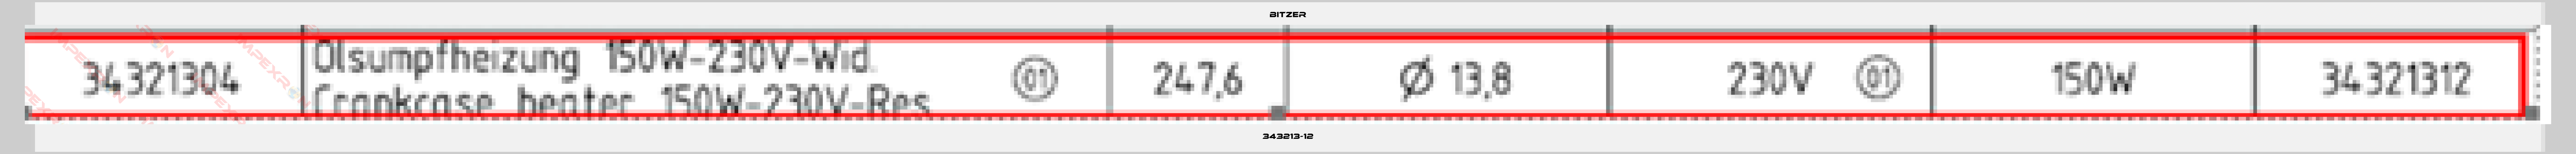 Bitzer-343213-12